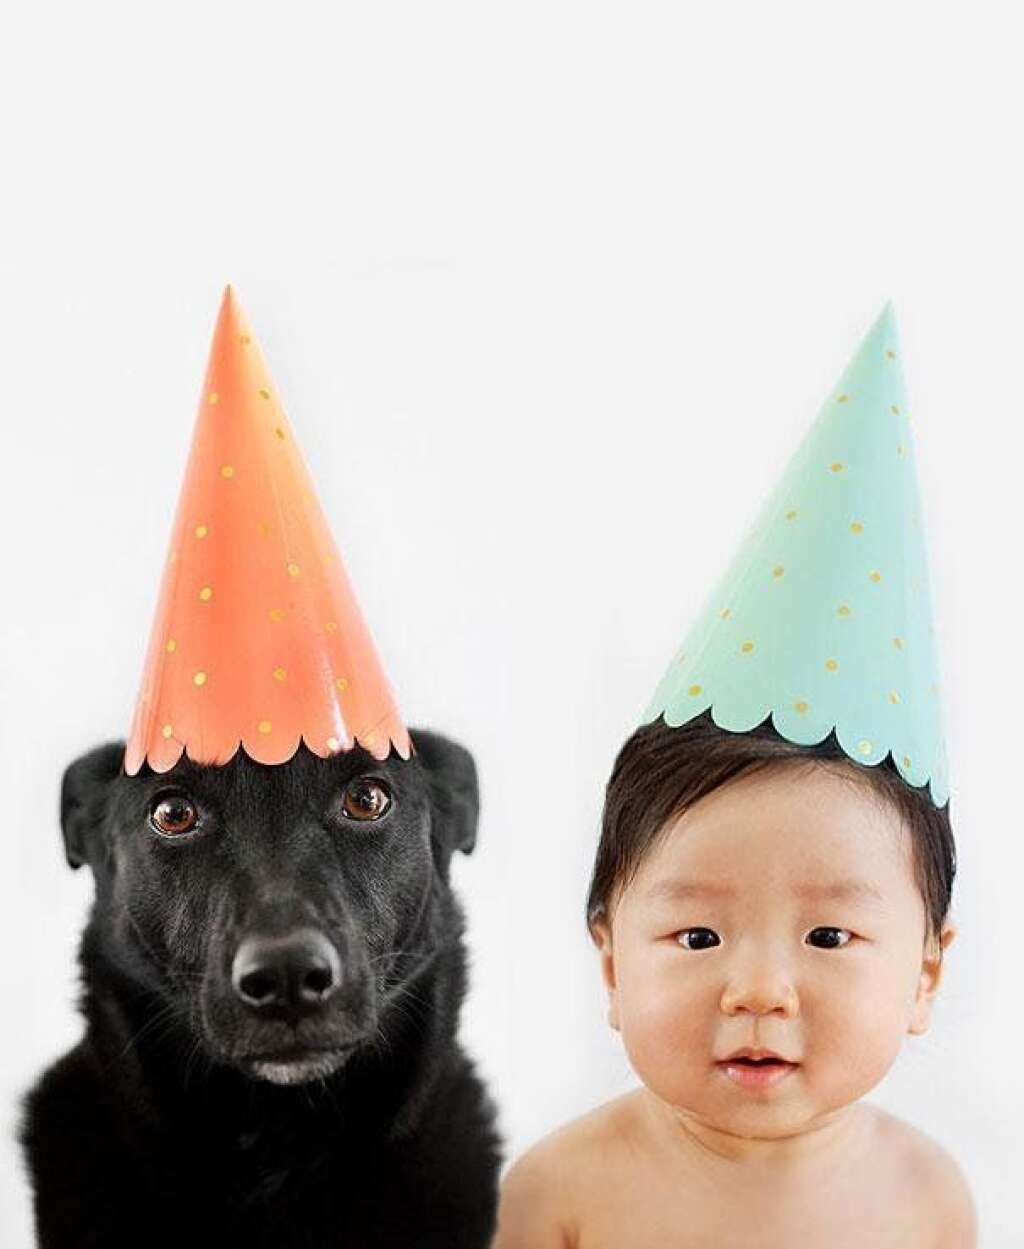 Une belle amitié immortalisée par Grâce Chon - Les deux amis fêtent un anniversaire